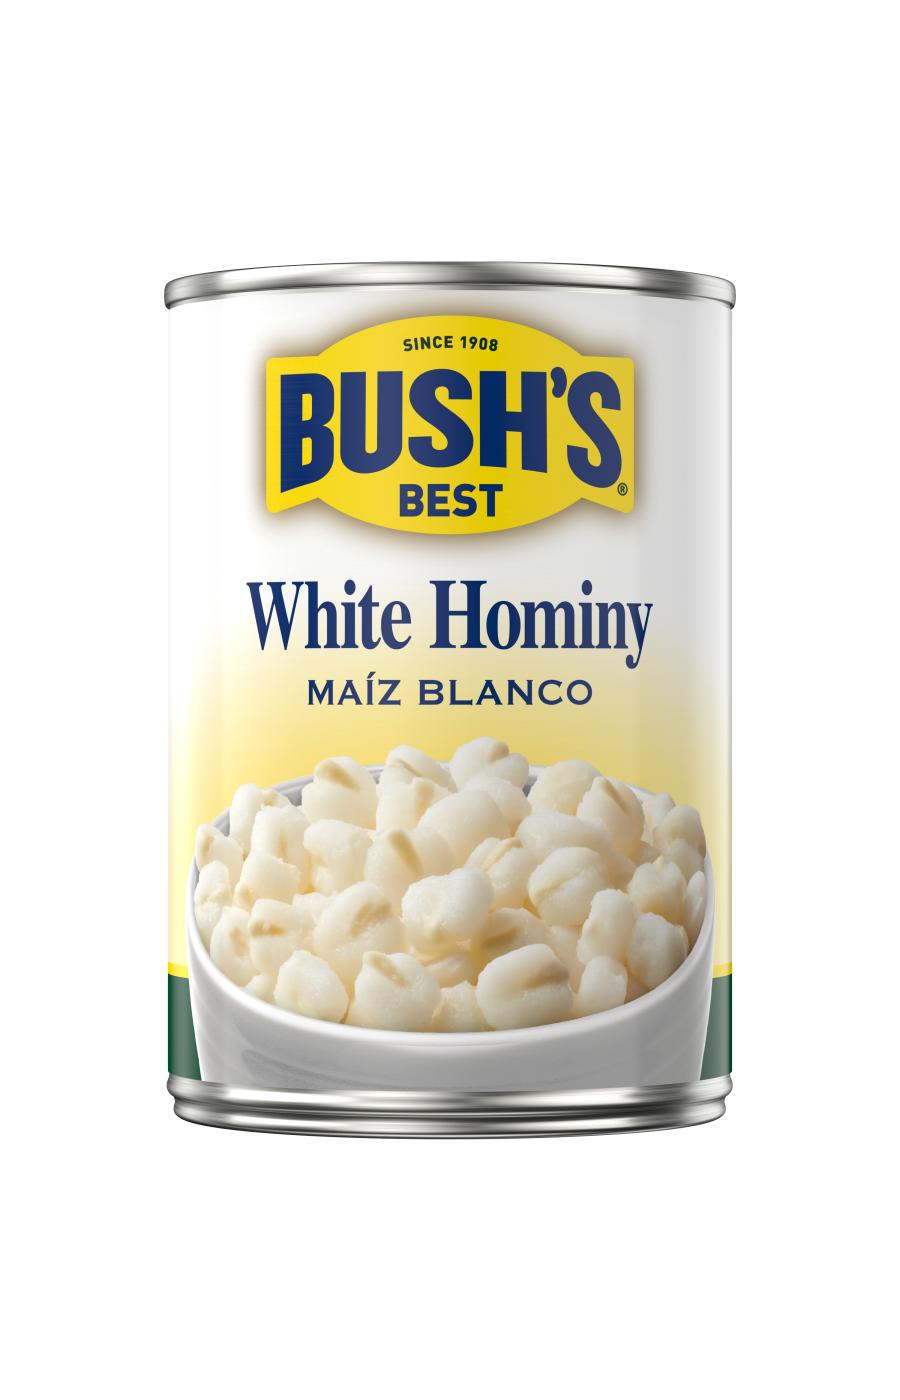 Bush's Best White Hominy; image 1 of 2